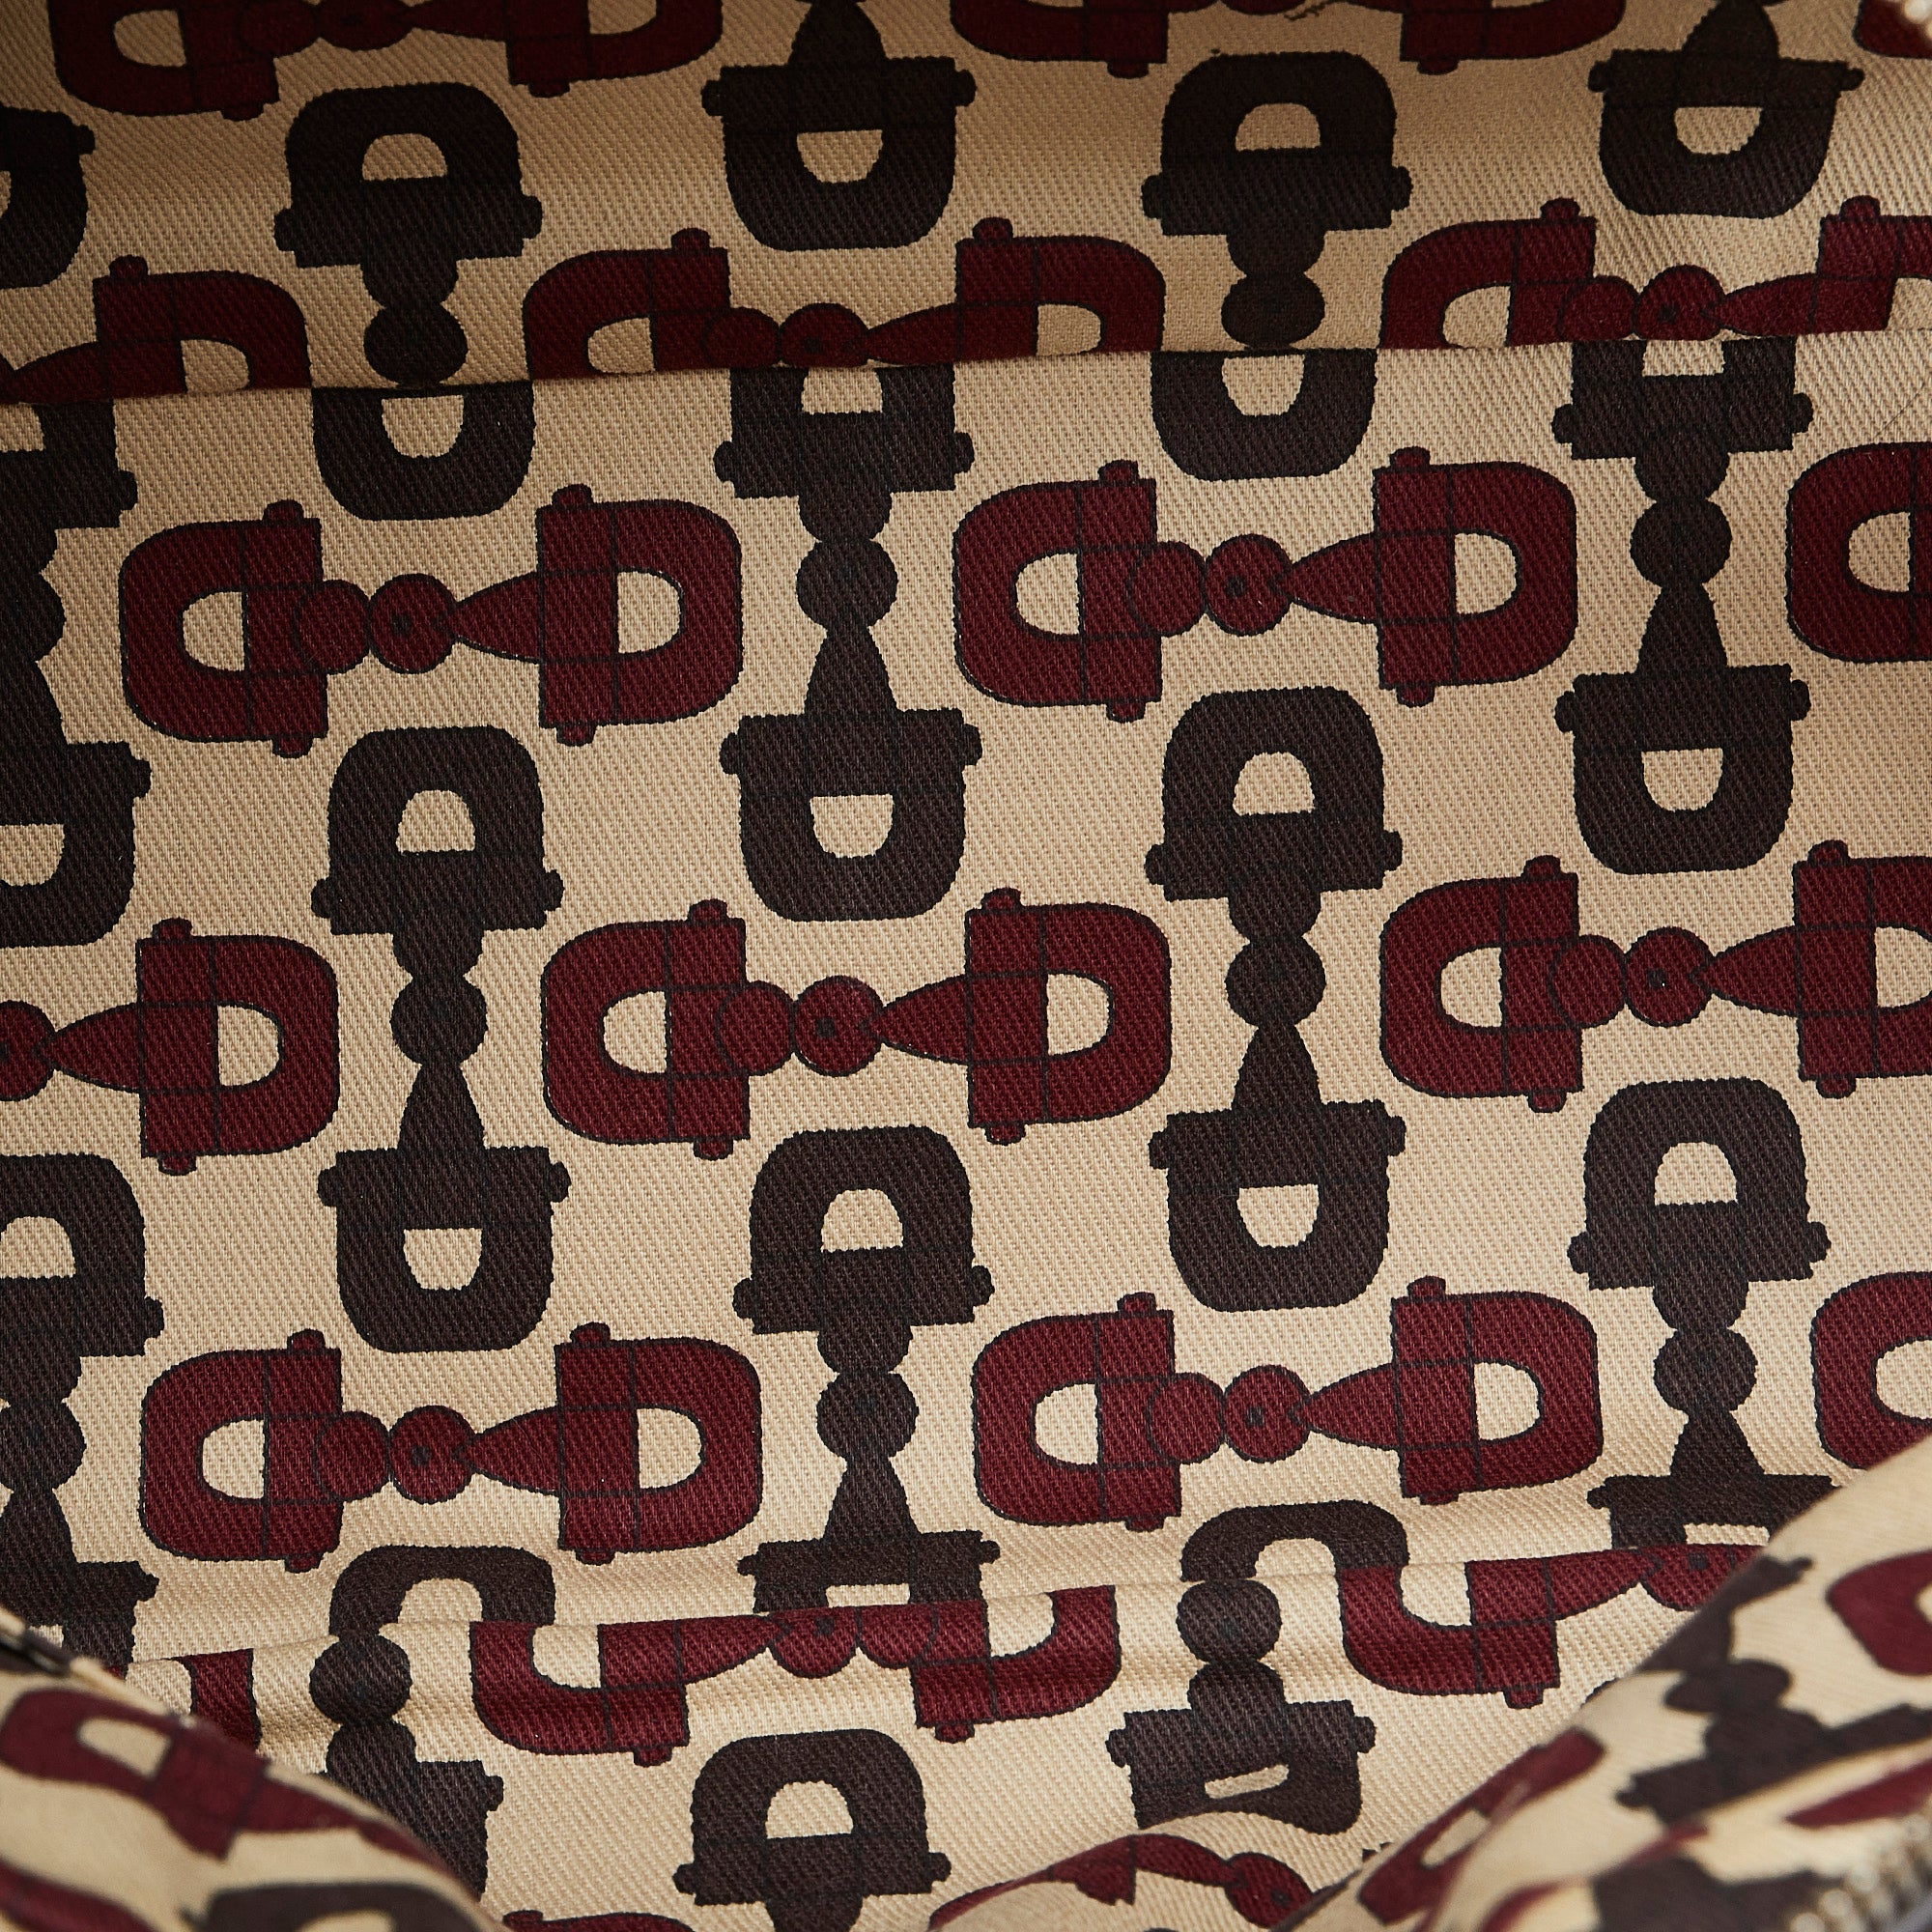 Gucci Princy Pattern Print Hobo